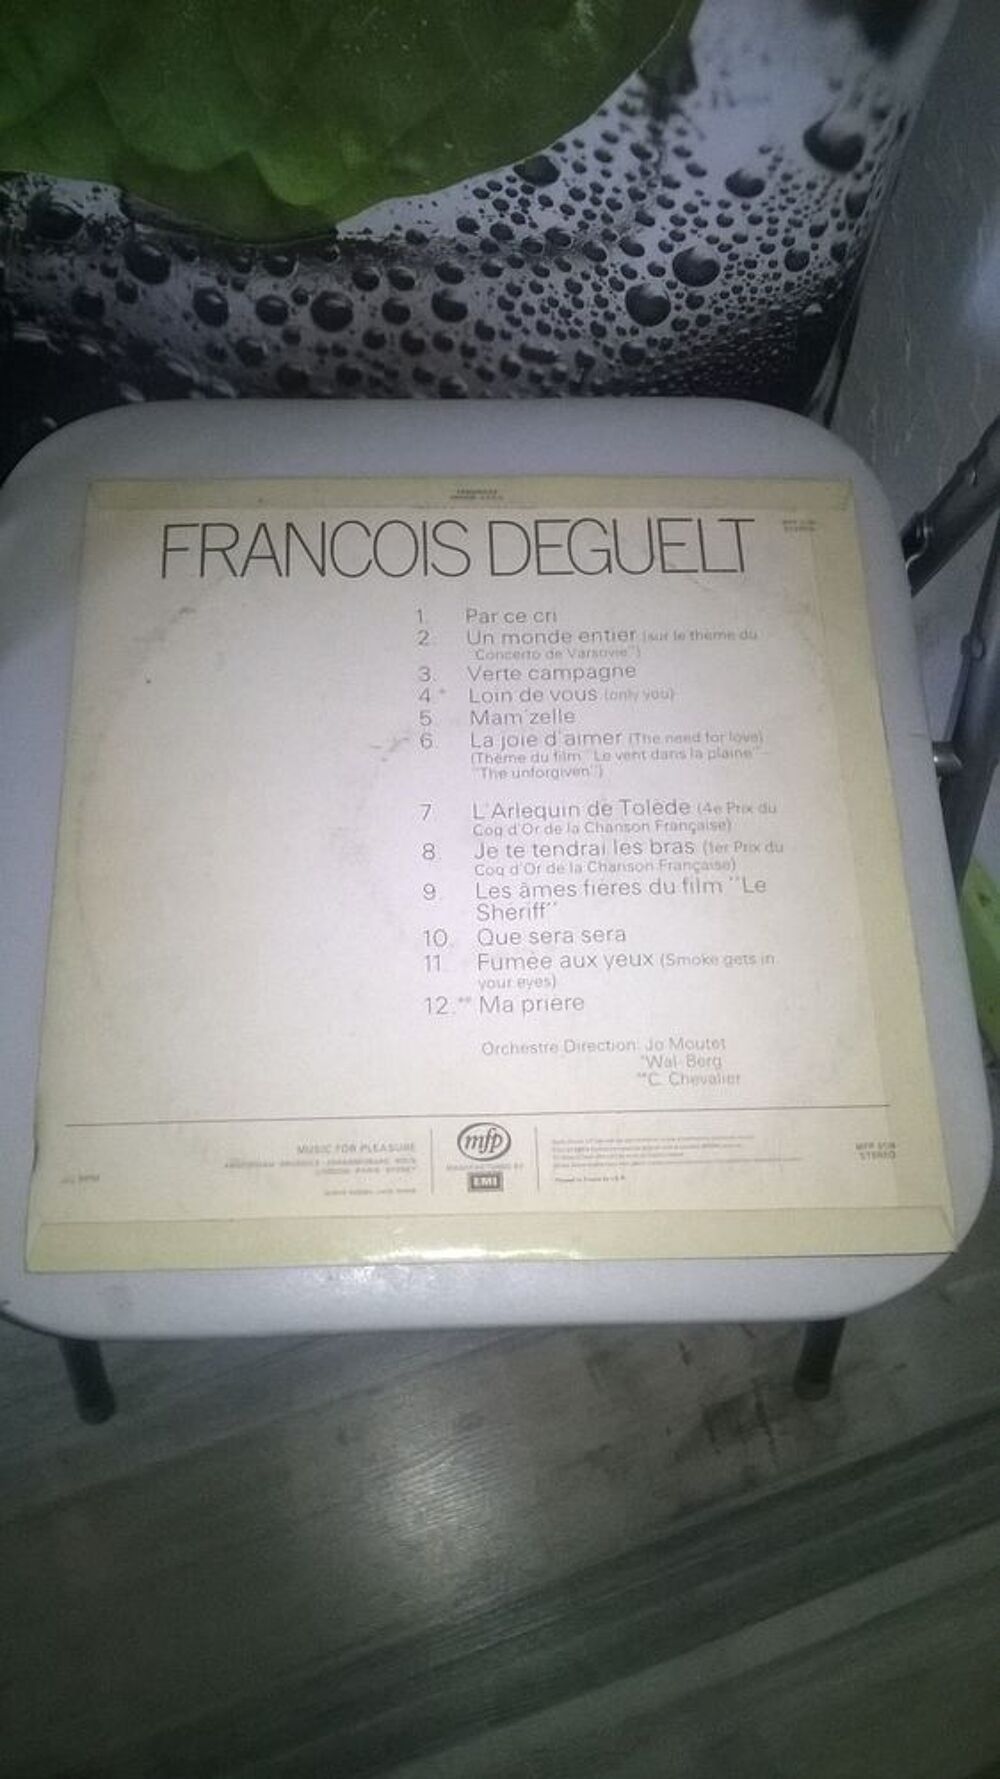 Vinyle Fran&ccedil;ois Deguelt
1977
Excellent etat
Par ce cri
Un CD et vinyles